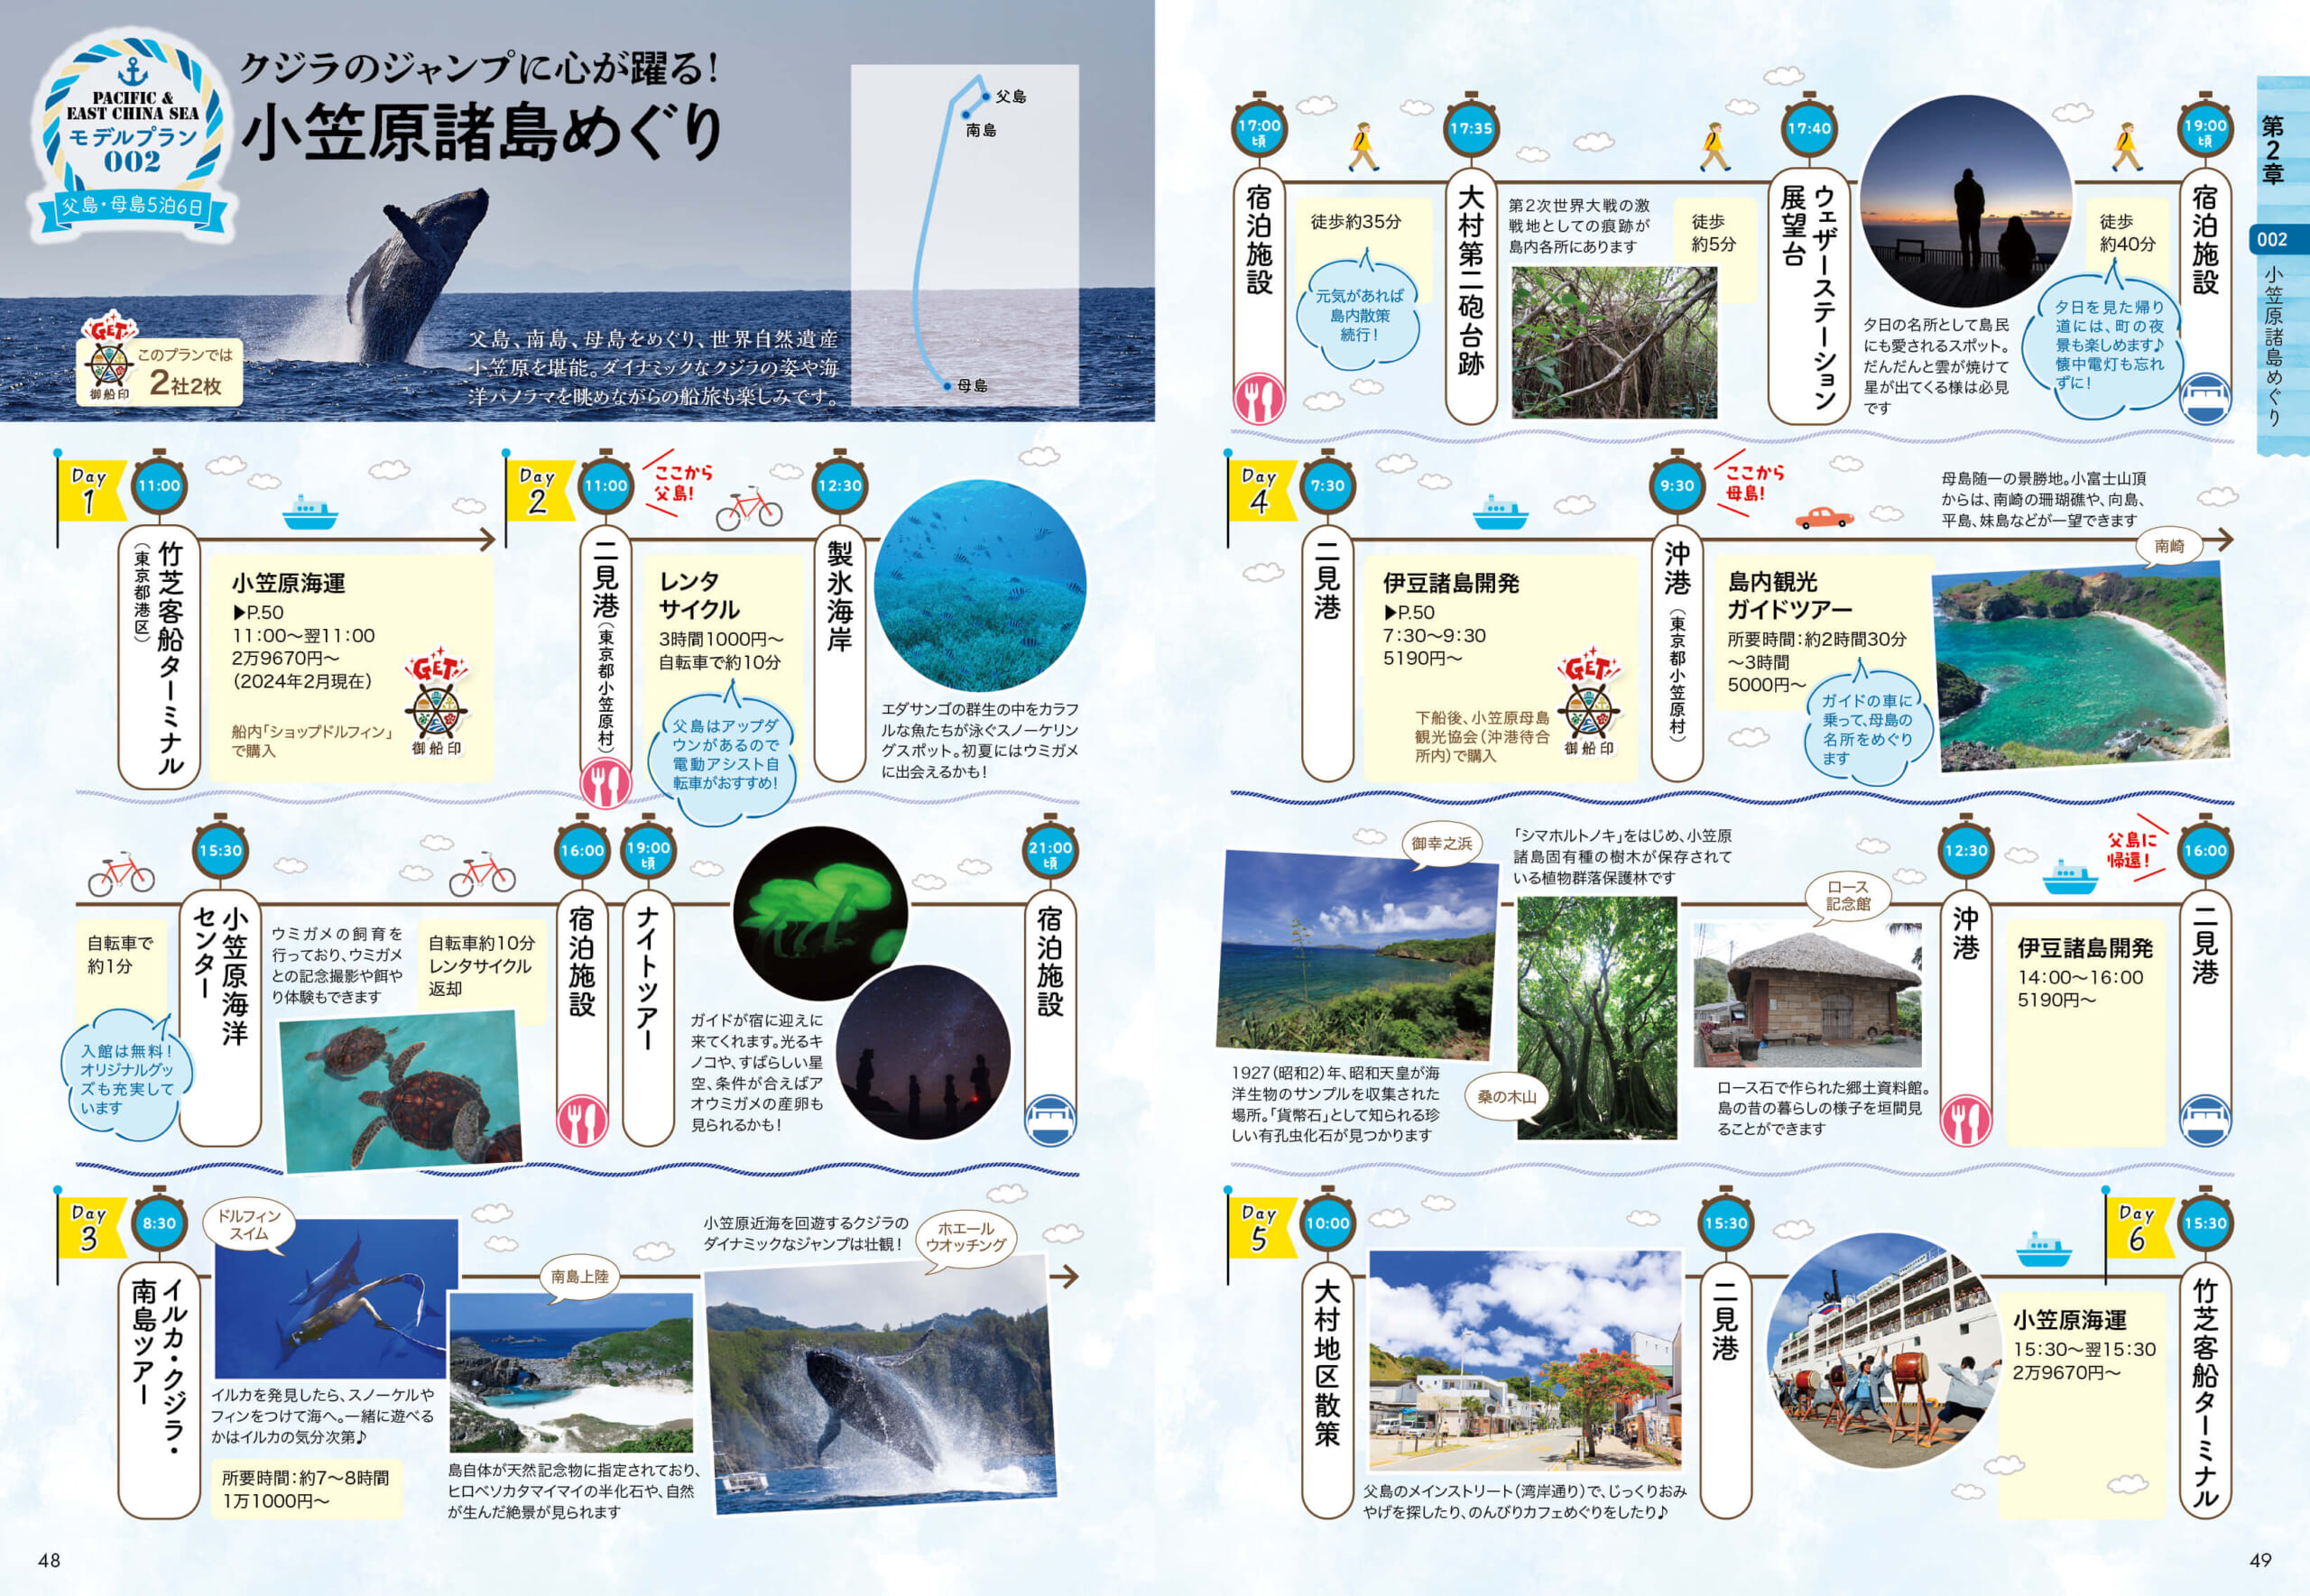 「東京・竹芝桟橋から船で24時間かけてたどり着く小笠原諸島は、2011年に世界自然遺産に登録」紙面